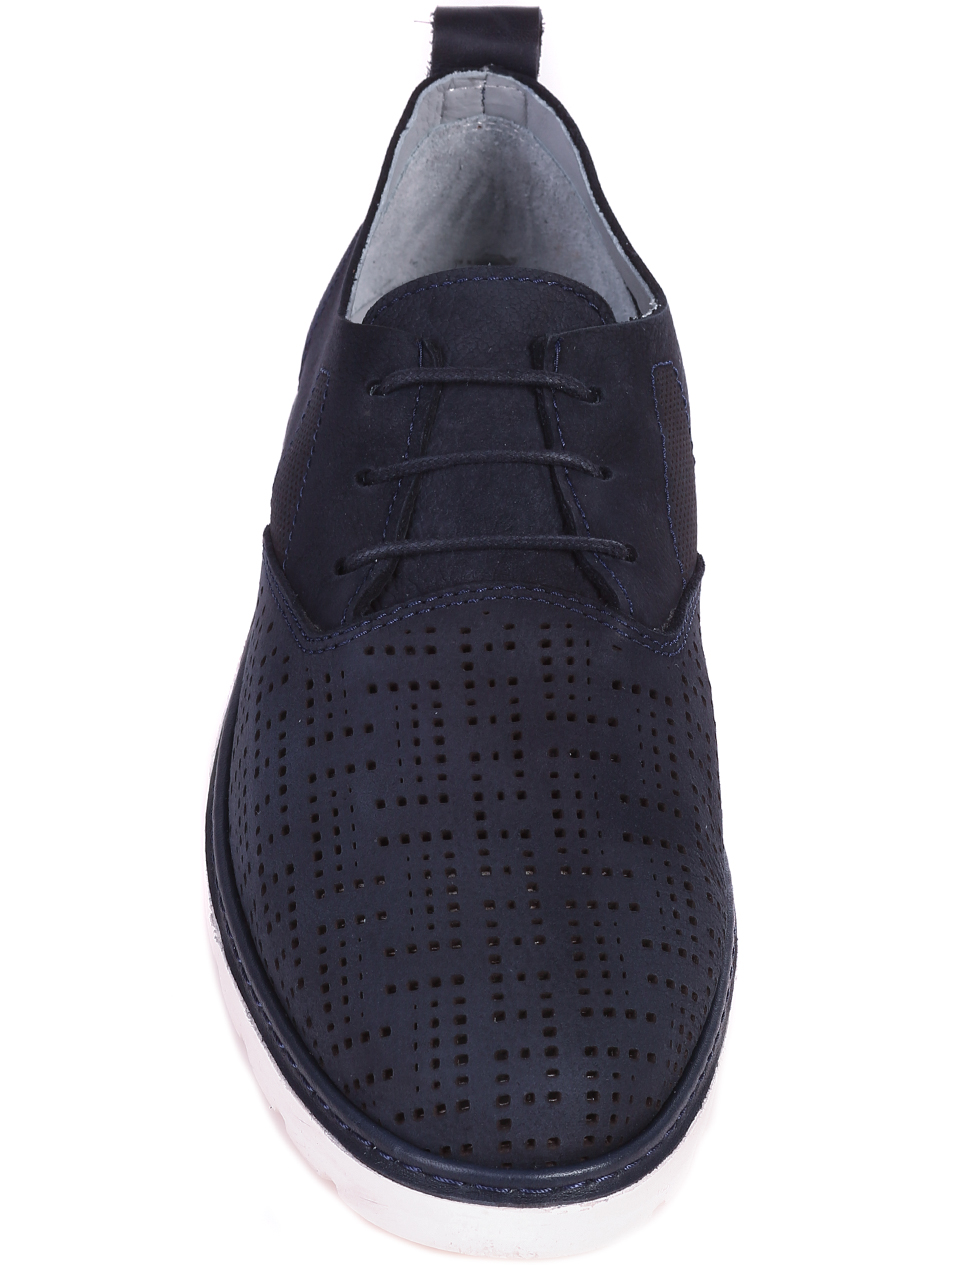 Mъжки обувки от естествен набук в цвят нави 7AT-24373 navy